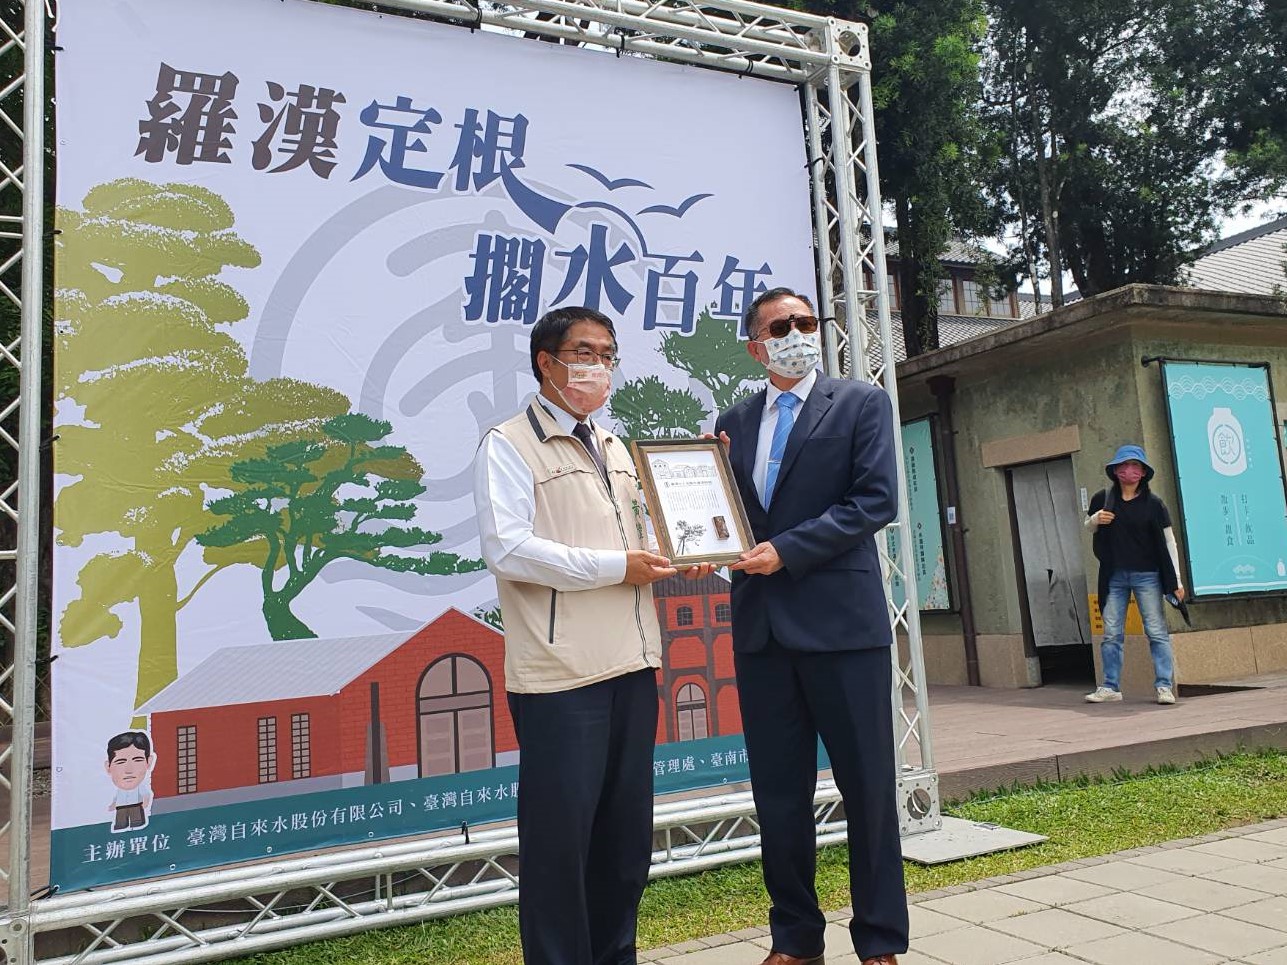 黃偉哲市長代表台南市政府致贈紀念牌予本公司，感謝自來水公司捐贈台南水道設施等古蹟，讓市府改建為水道博物館，讓更多民眾了解台南自來水的歷史。